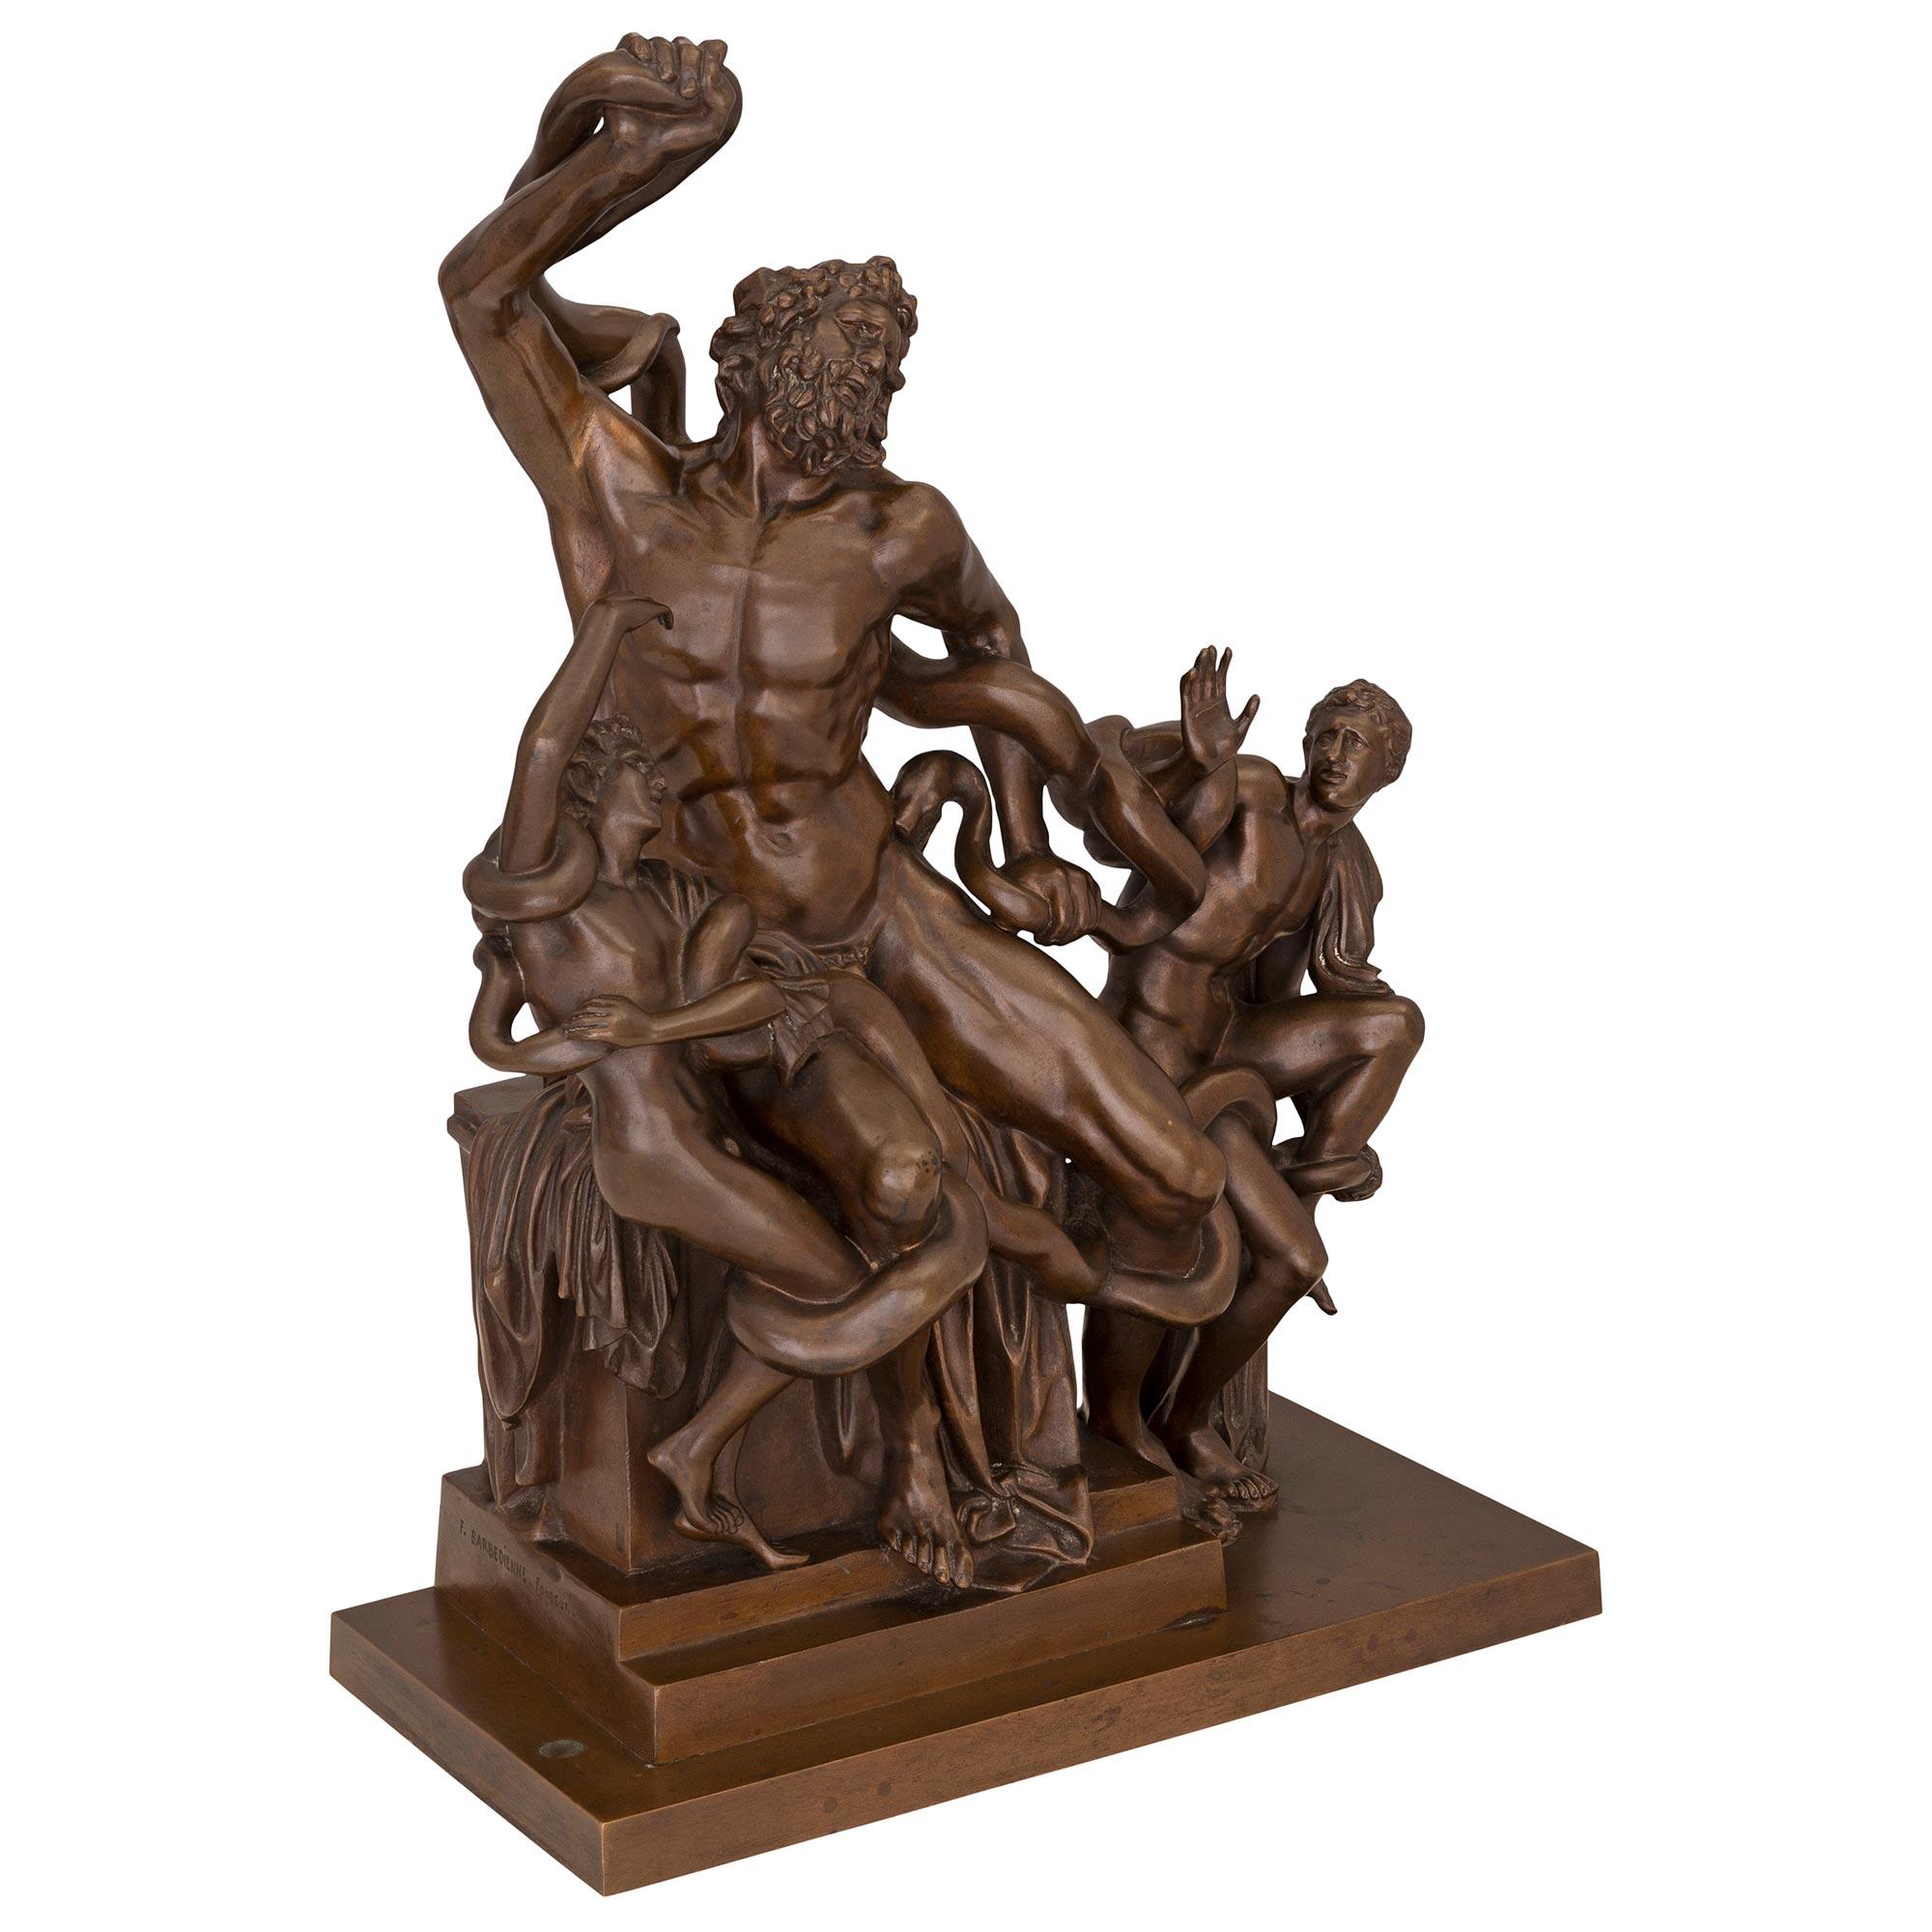 Statue en bronze patiné du 19e siècle de Laocoön et ses fils, signée Barbedienne. Le bronze est surélevé par une base rectangulaire sous un support de piédestal étagé. Au centre se trouve le beau Laocoön, richement sculpté, qui combat les serpents